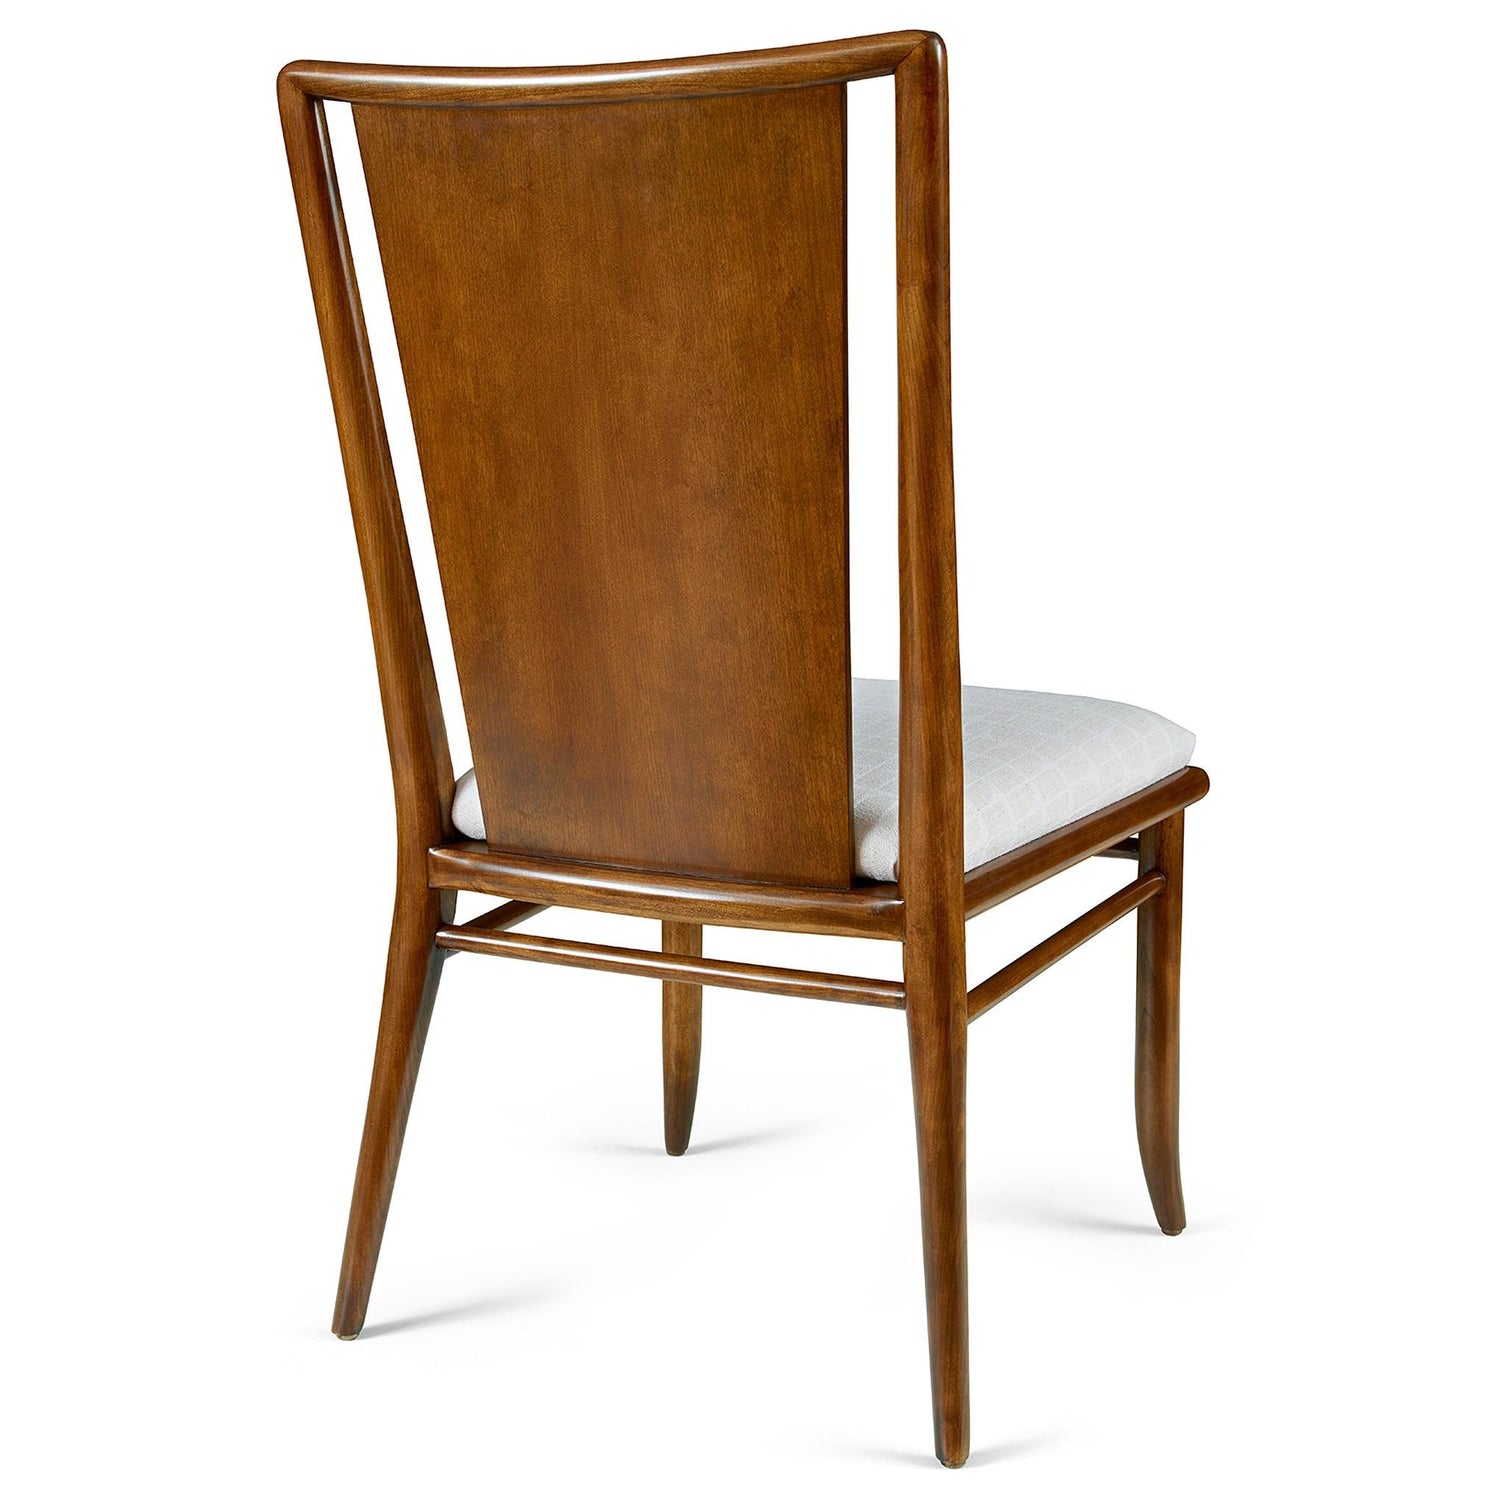 Martine Side Chair - Stickley Brand